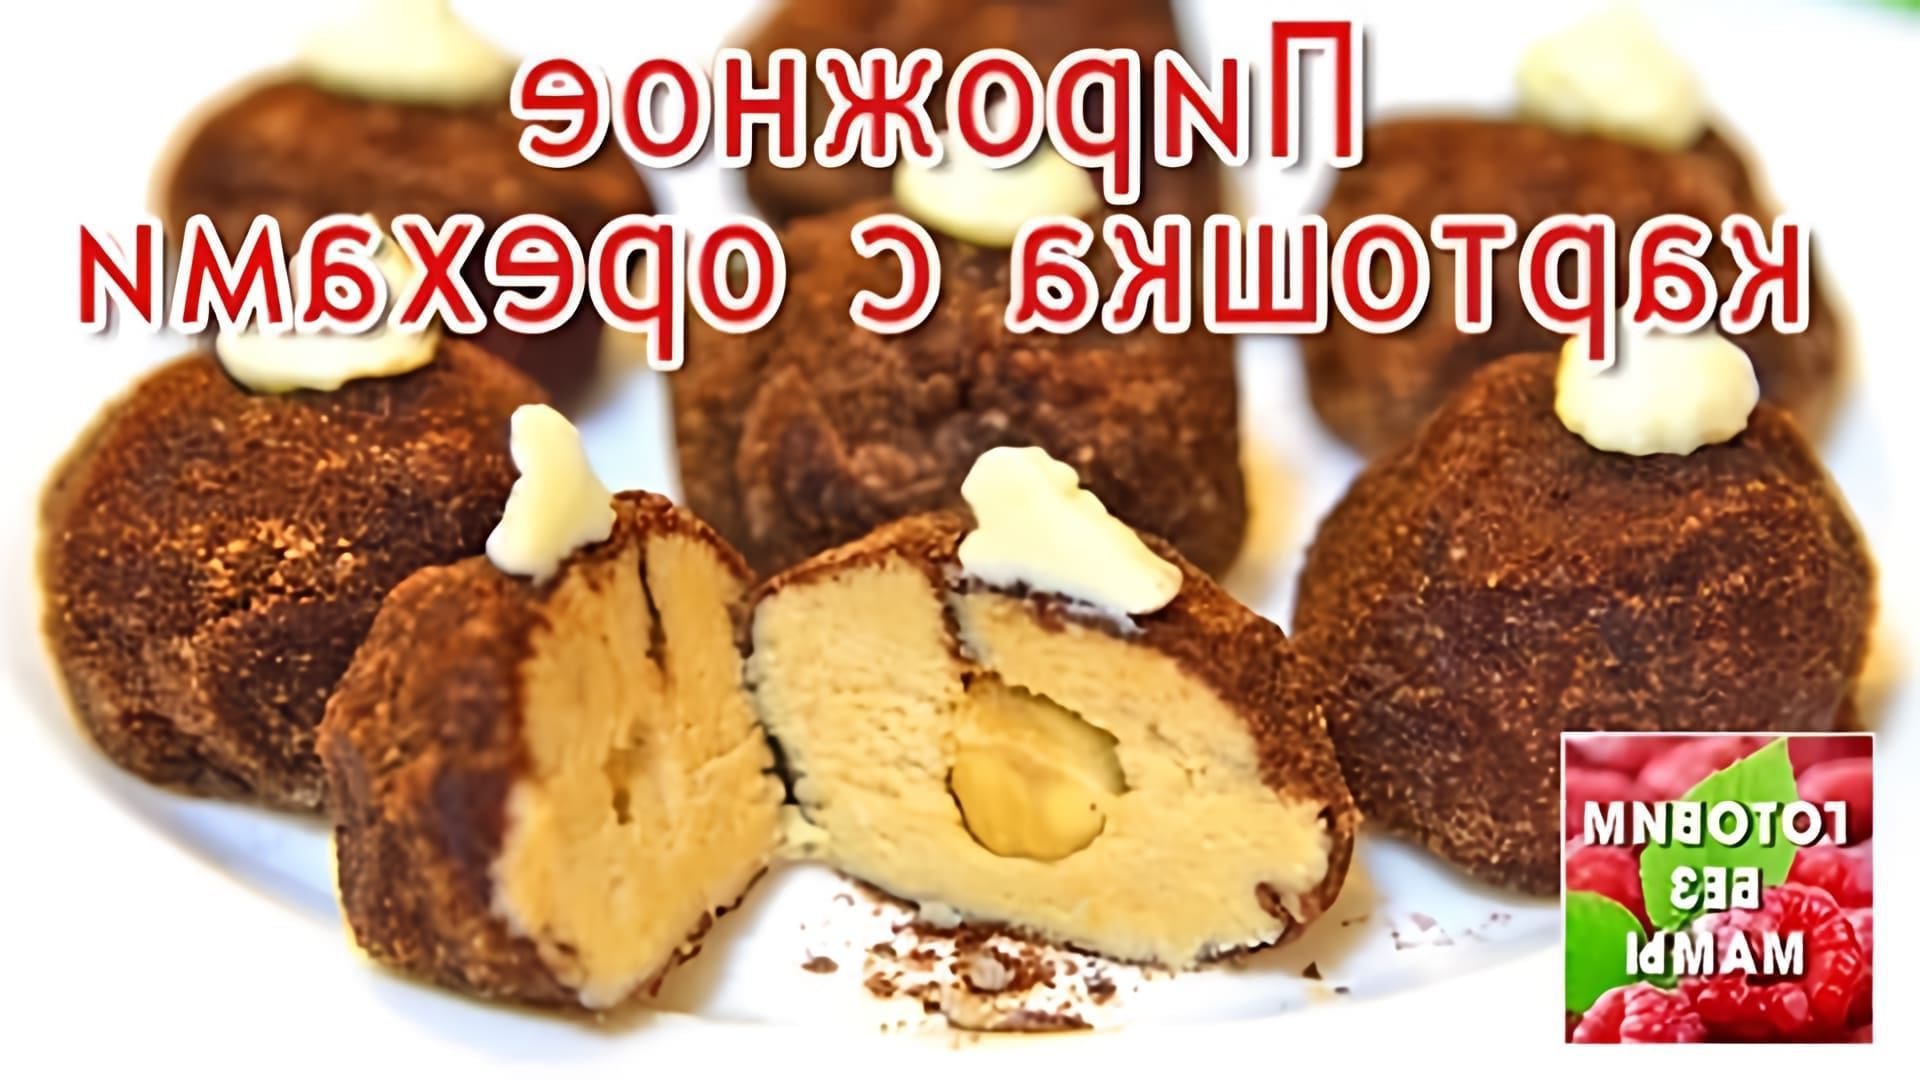 В этом видео демонстрируется рецепт приготовления пирожного "Картошка" с орехами